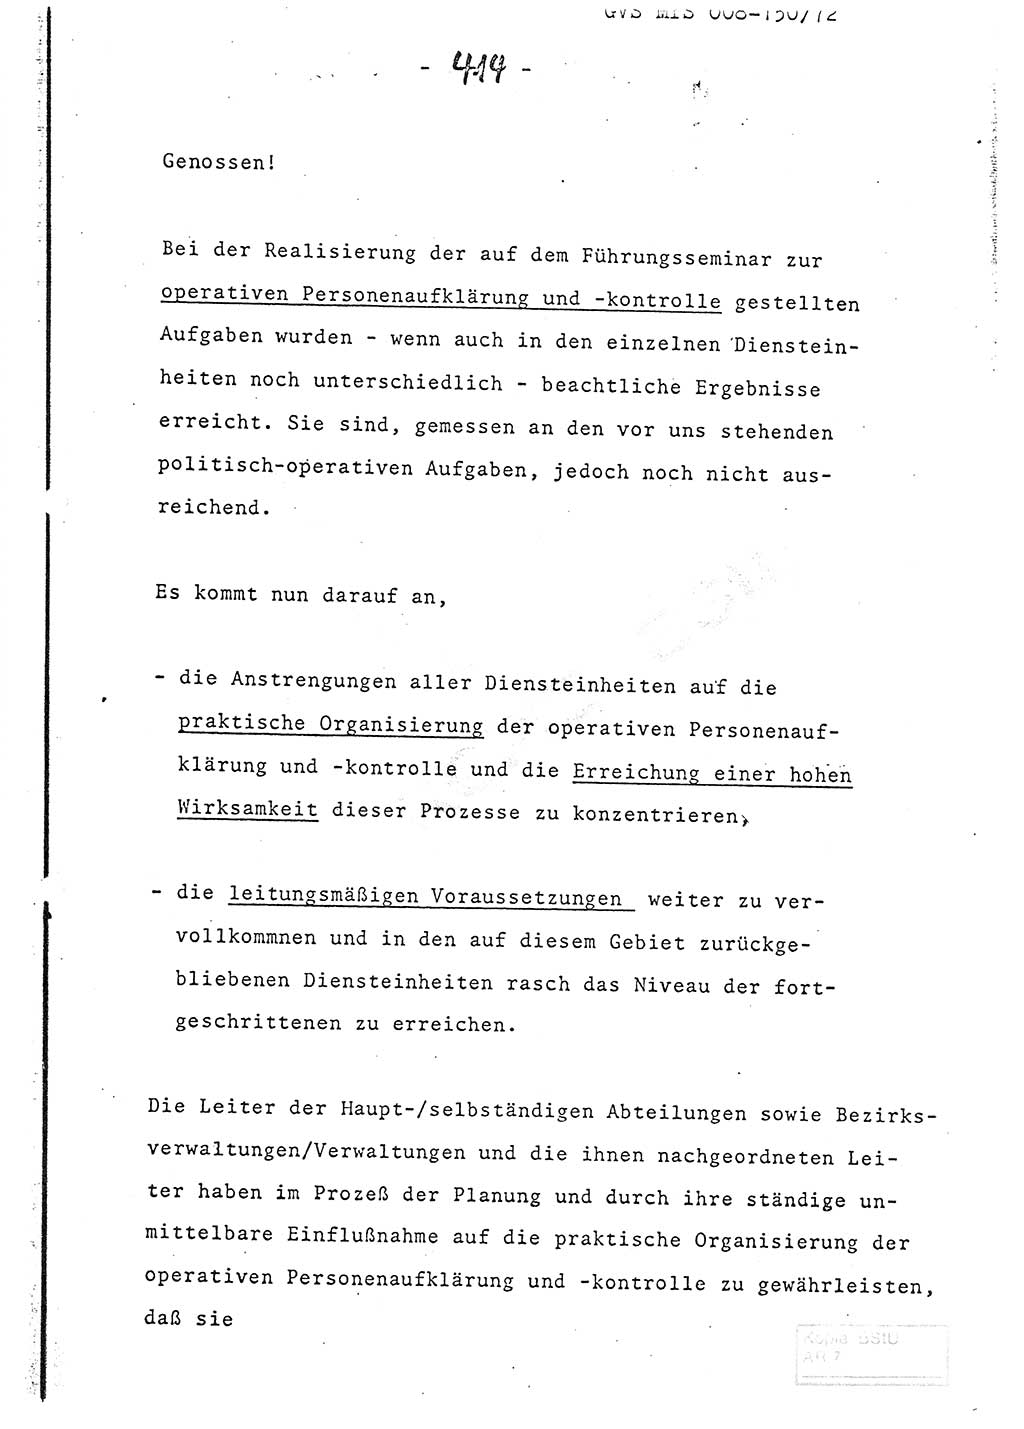 Referat (Entwurf) des Genossen Minister (Generaloberst Erich Mielke) auf der Dienstkonferenz 1972, Ministerium für Staatssicherheit (MfS) [Deutsche Demokratische Republik (DDR)], Der Minister, Geheime Verschlußsache (GVS) 008-150/72, Berlin 25.2.1972, Seite 414 (Ref. Entw. DK MfS DDR Min. GVS 008-150/72 1972, S. 414)